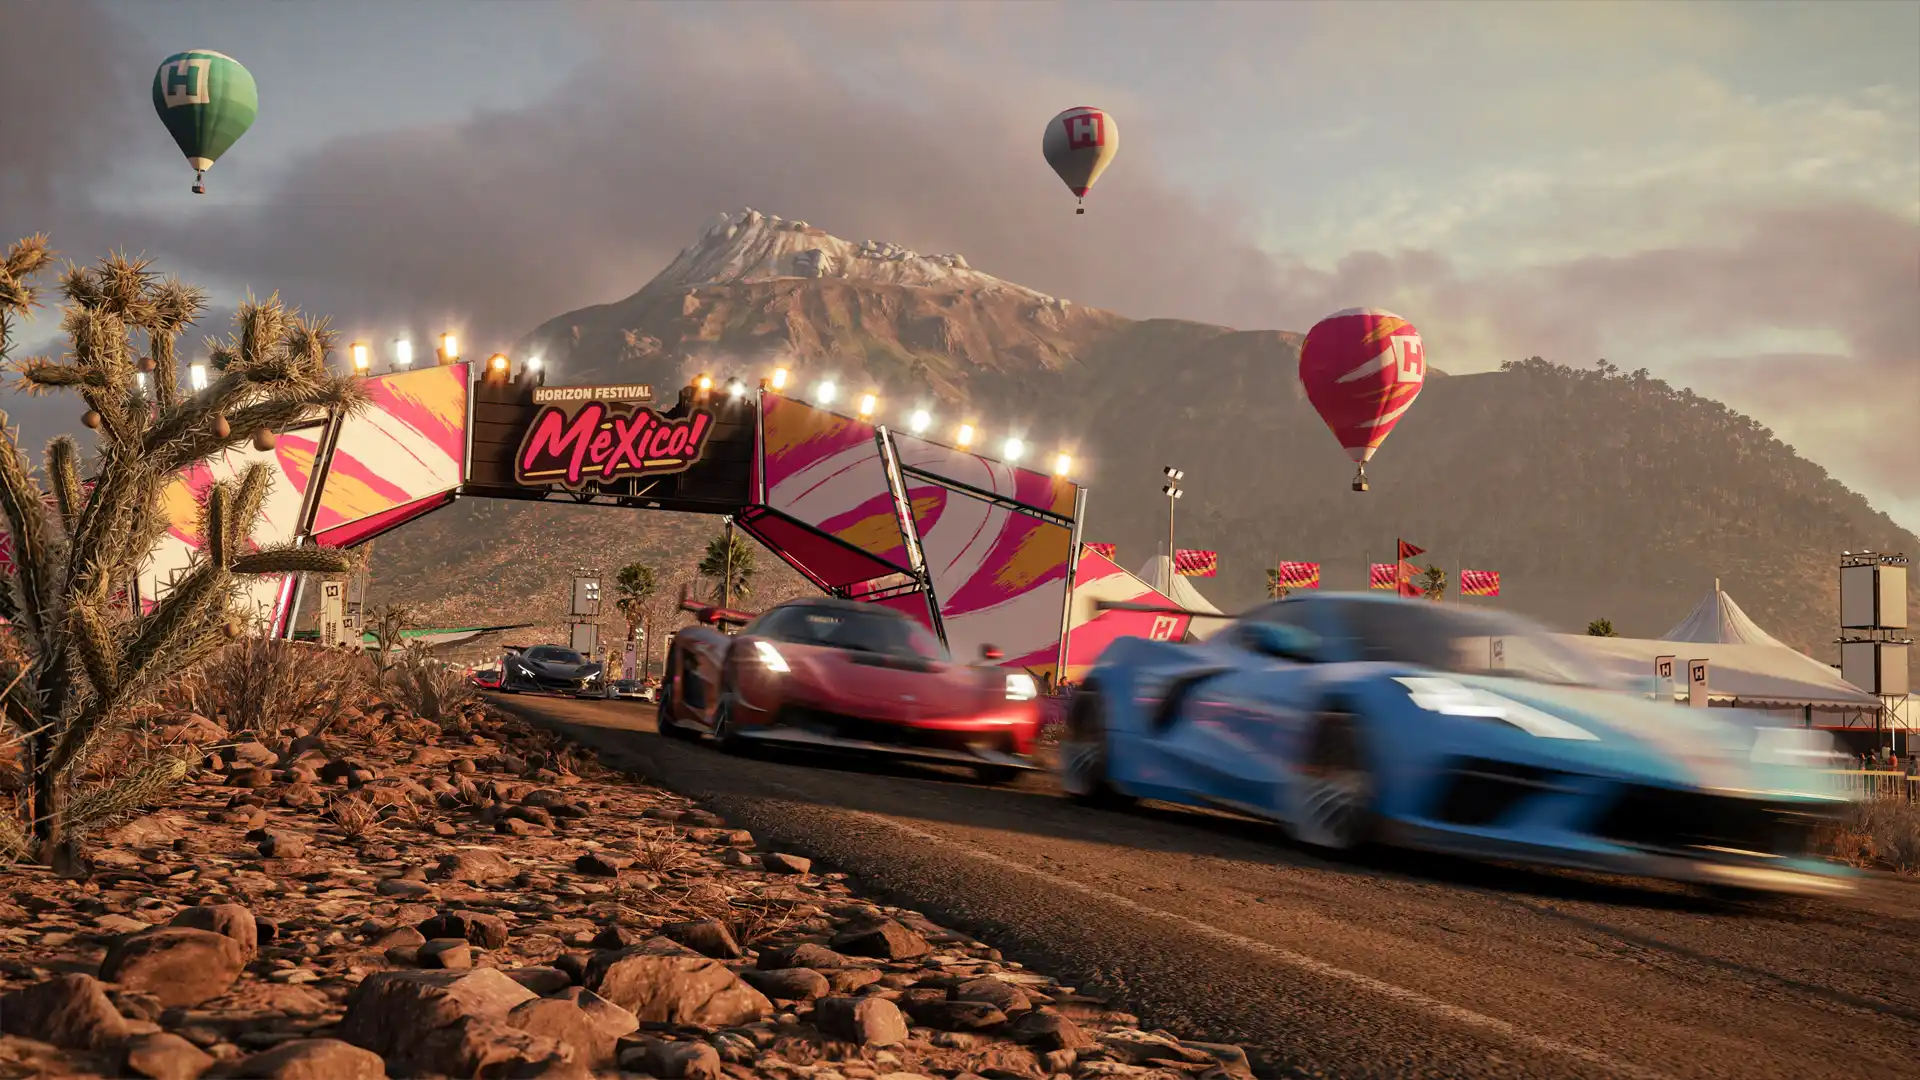 Imagem do jogo Forza Horizon 5 com um carro azul embaçado pela velocidade, um carro vermelho atrás dele e um terceiro carro preto mais atrás competindo em uma estrada de terra com montanhas e balões ao fundo e um letreiro escrito "Mexico!"